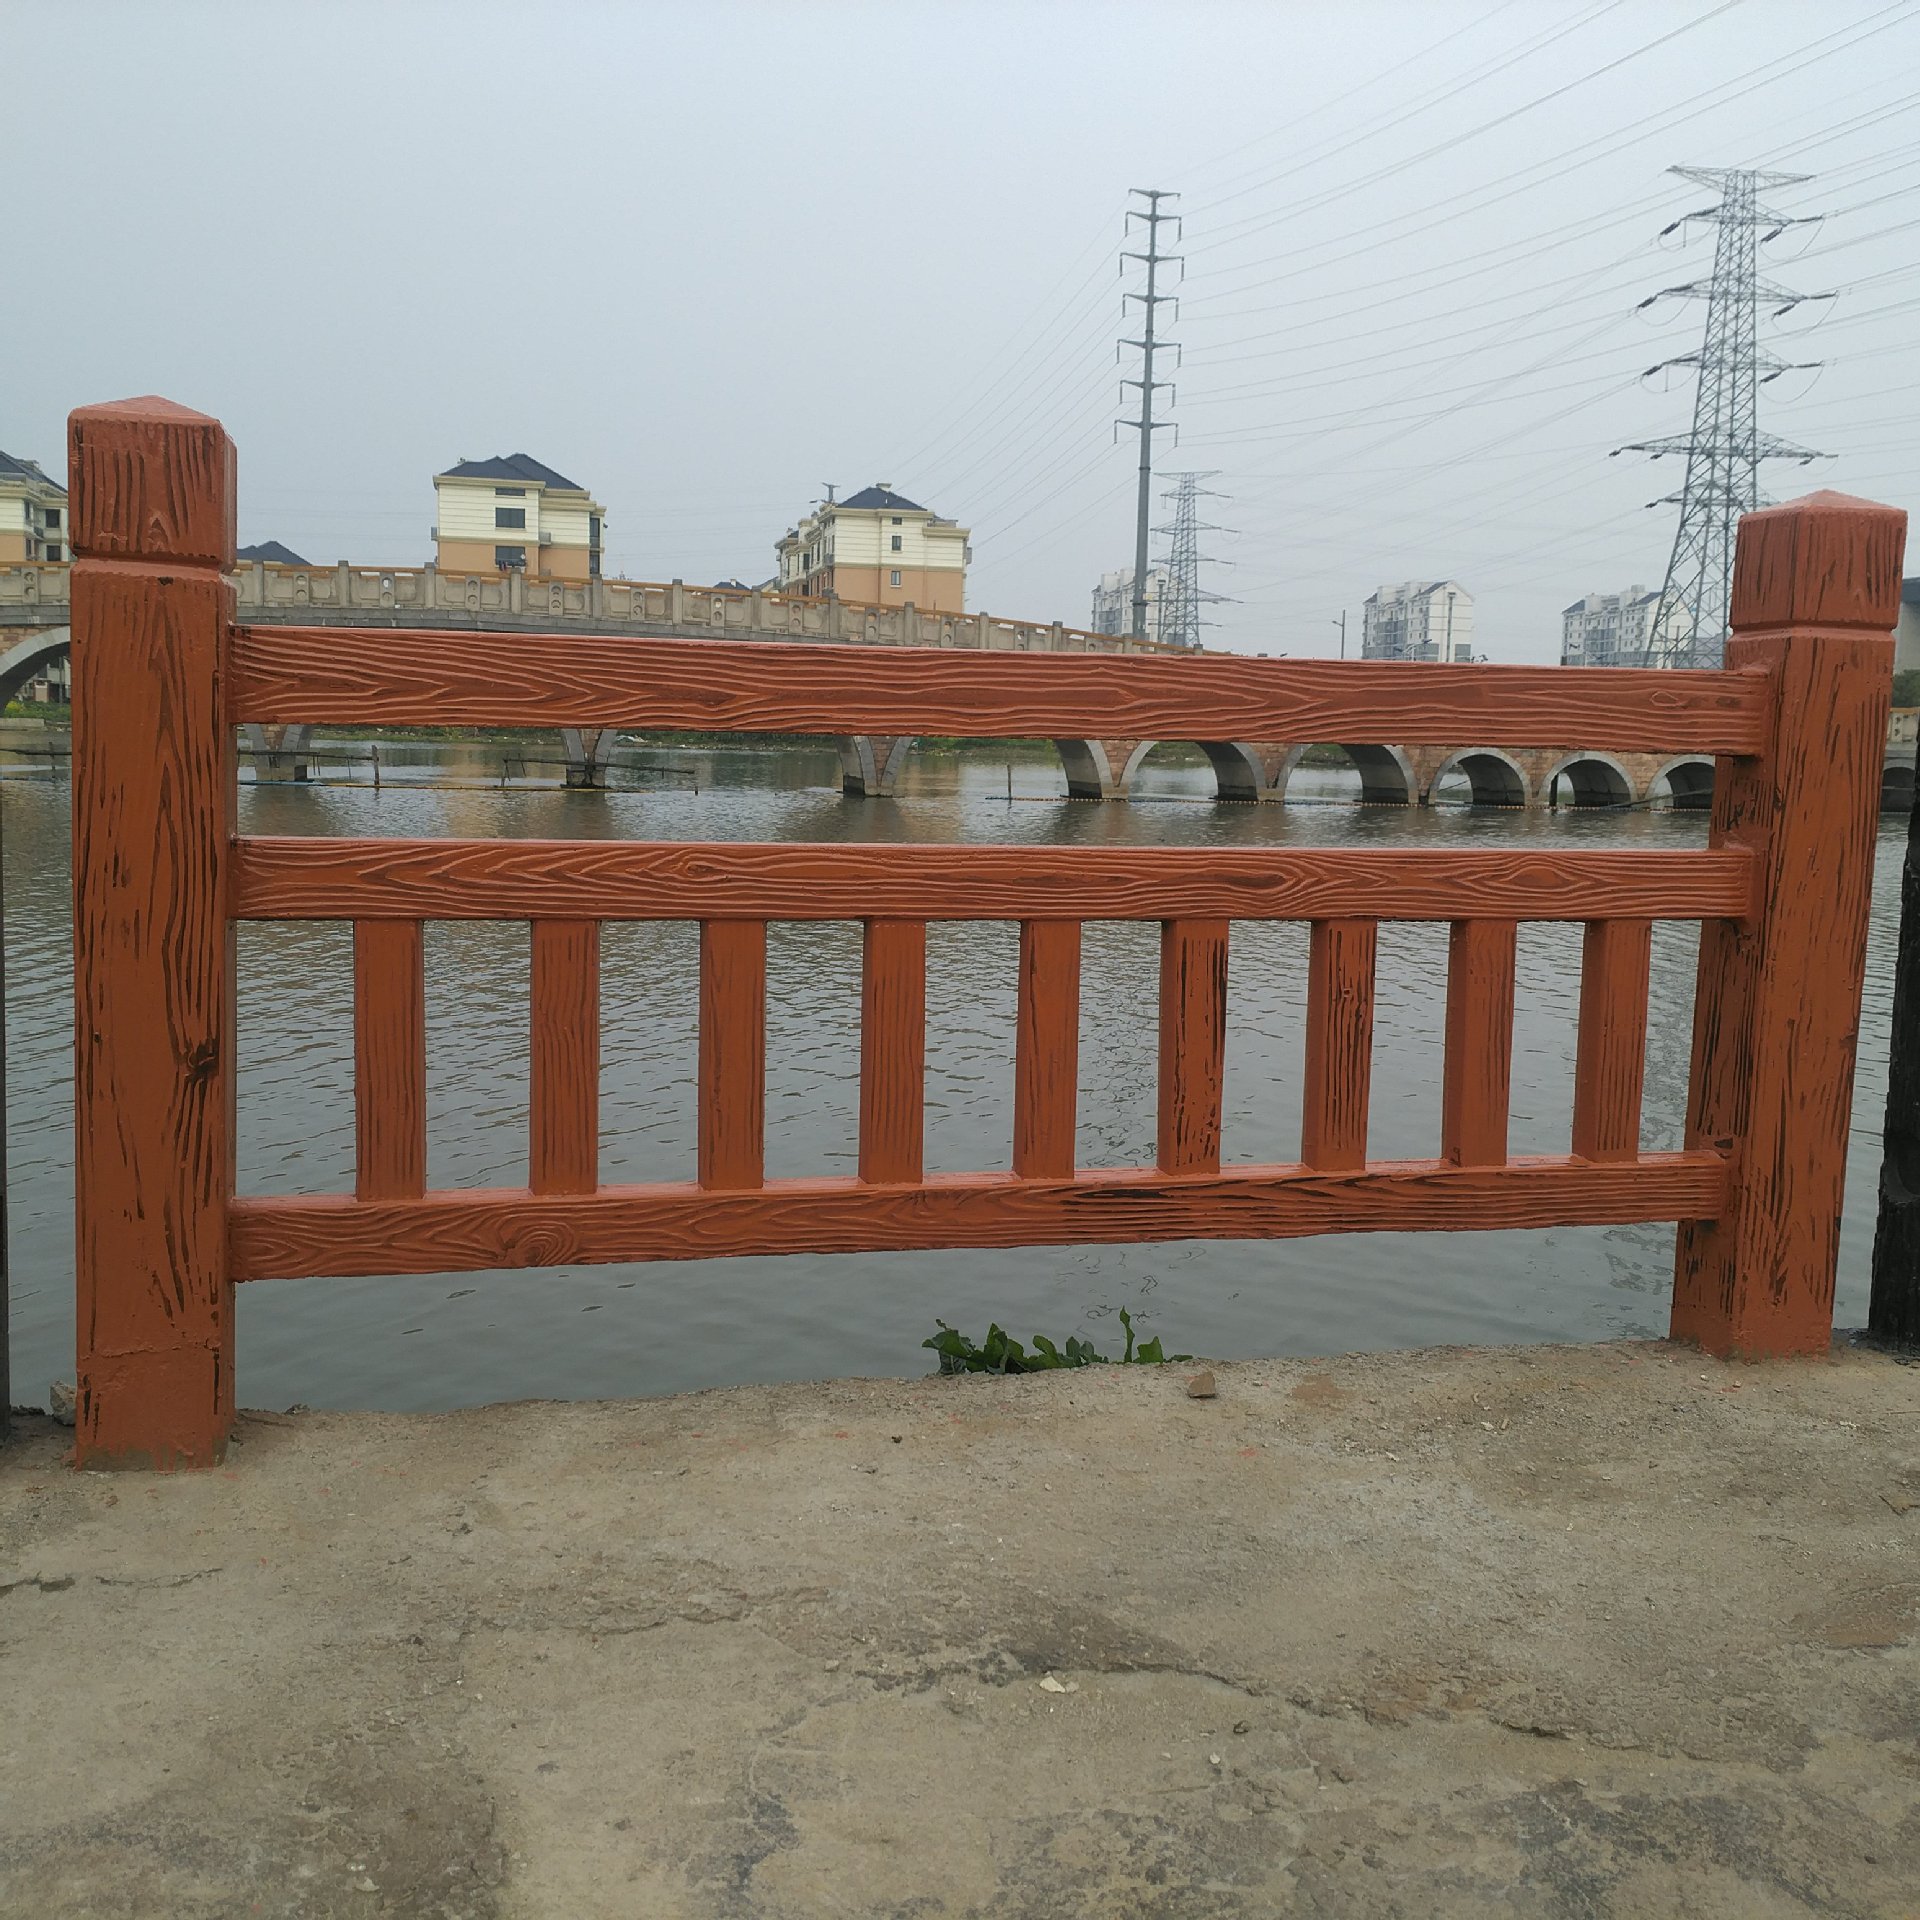 广州天河仿木护栏厂家找广东华坚水泥制品,质量可靠,抗压耐腐蚀